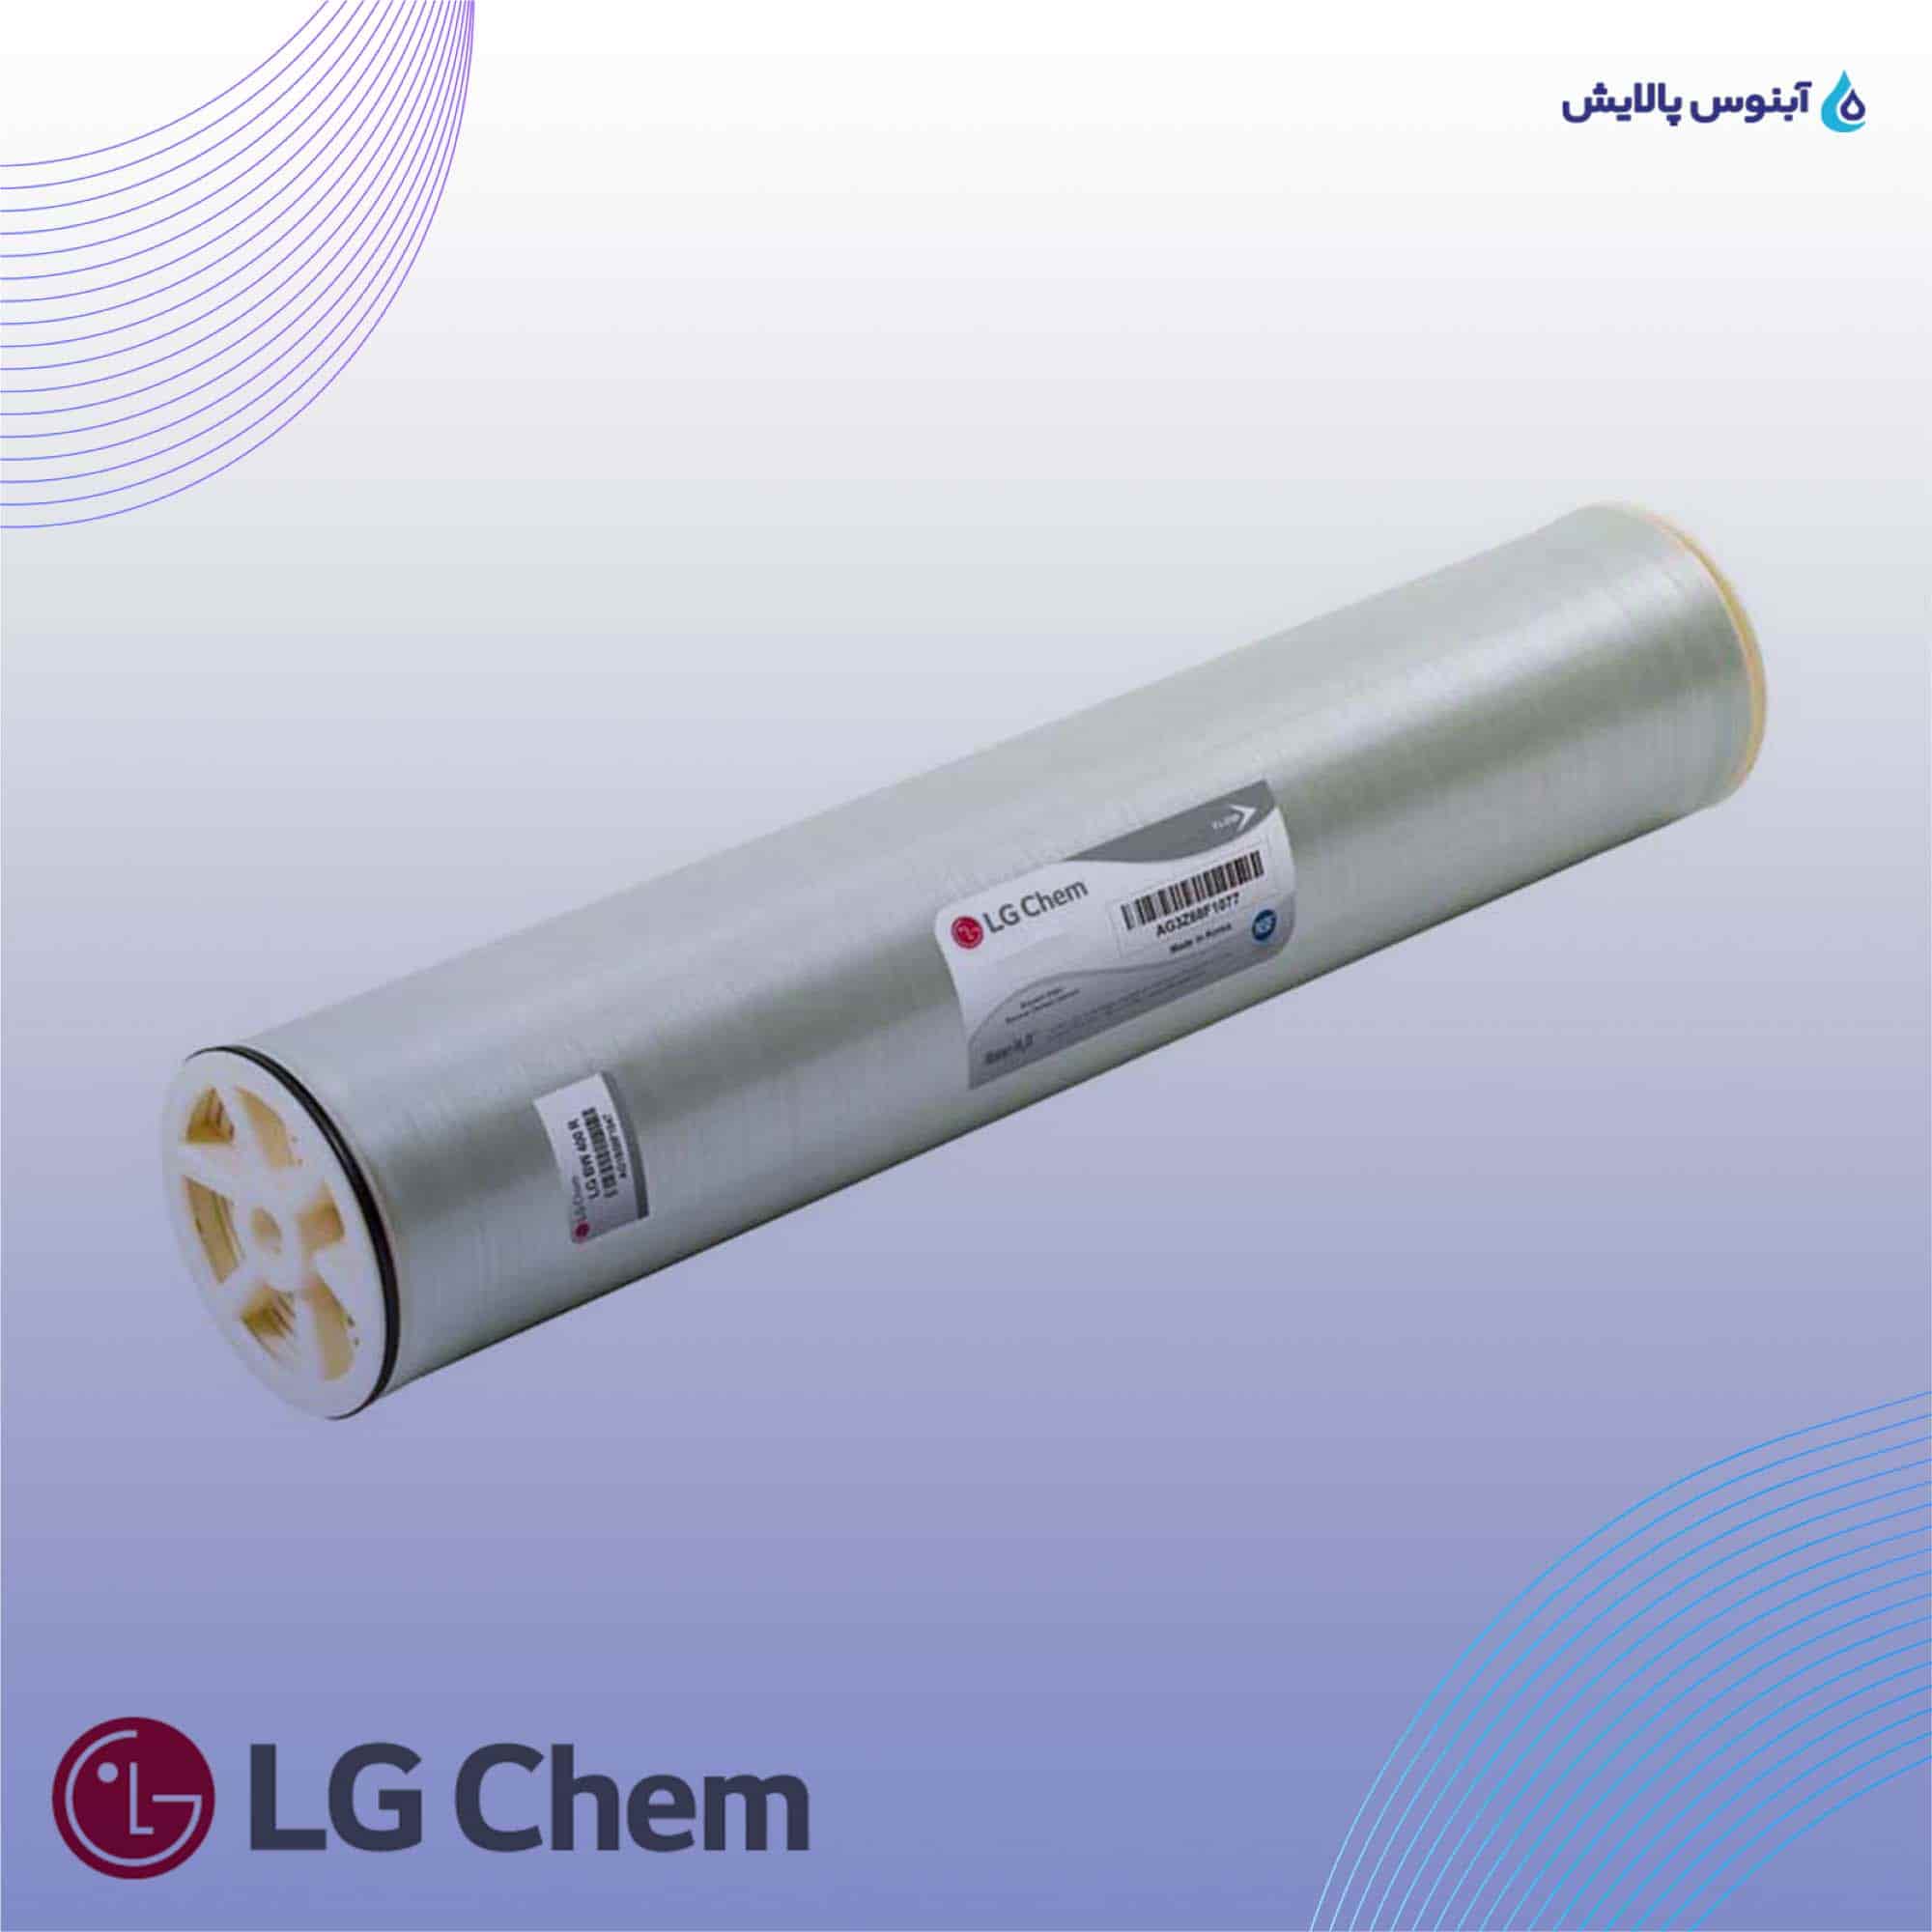 ممبران دریایی 8 اینچ ال جی کم (LG Chem) مدل LG SW 400 ES